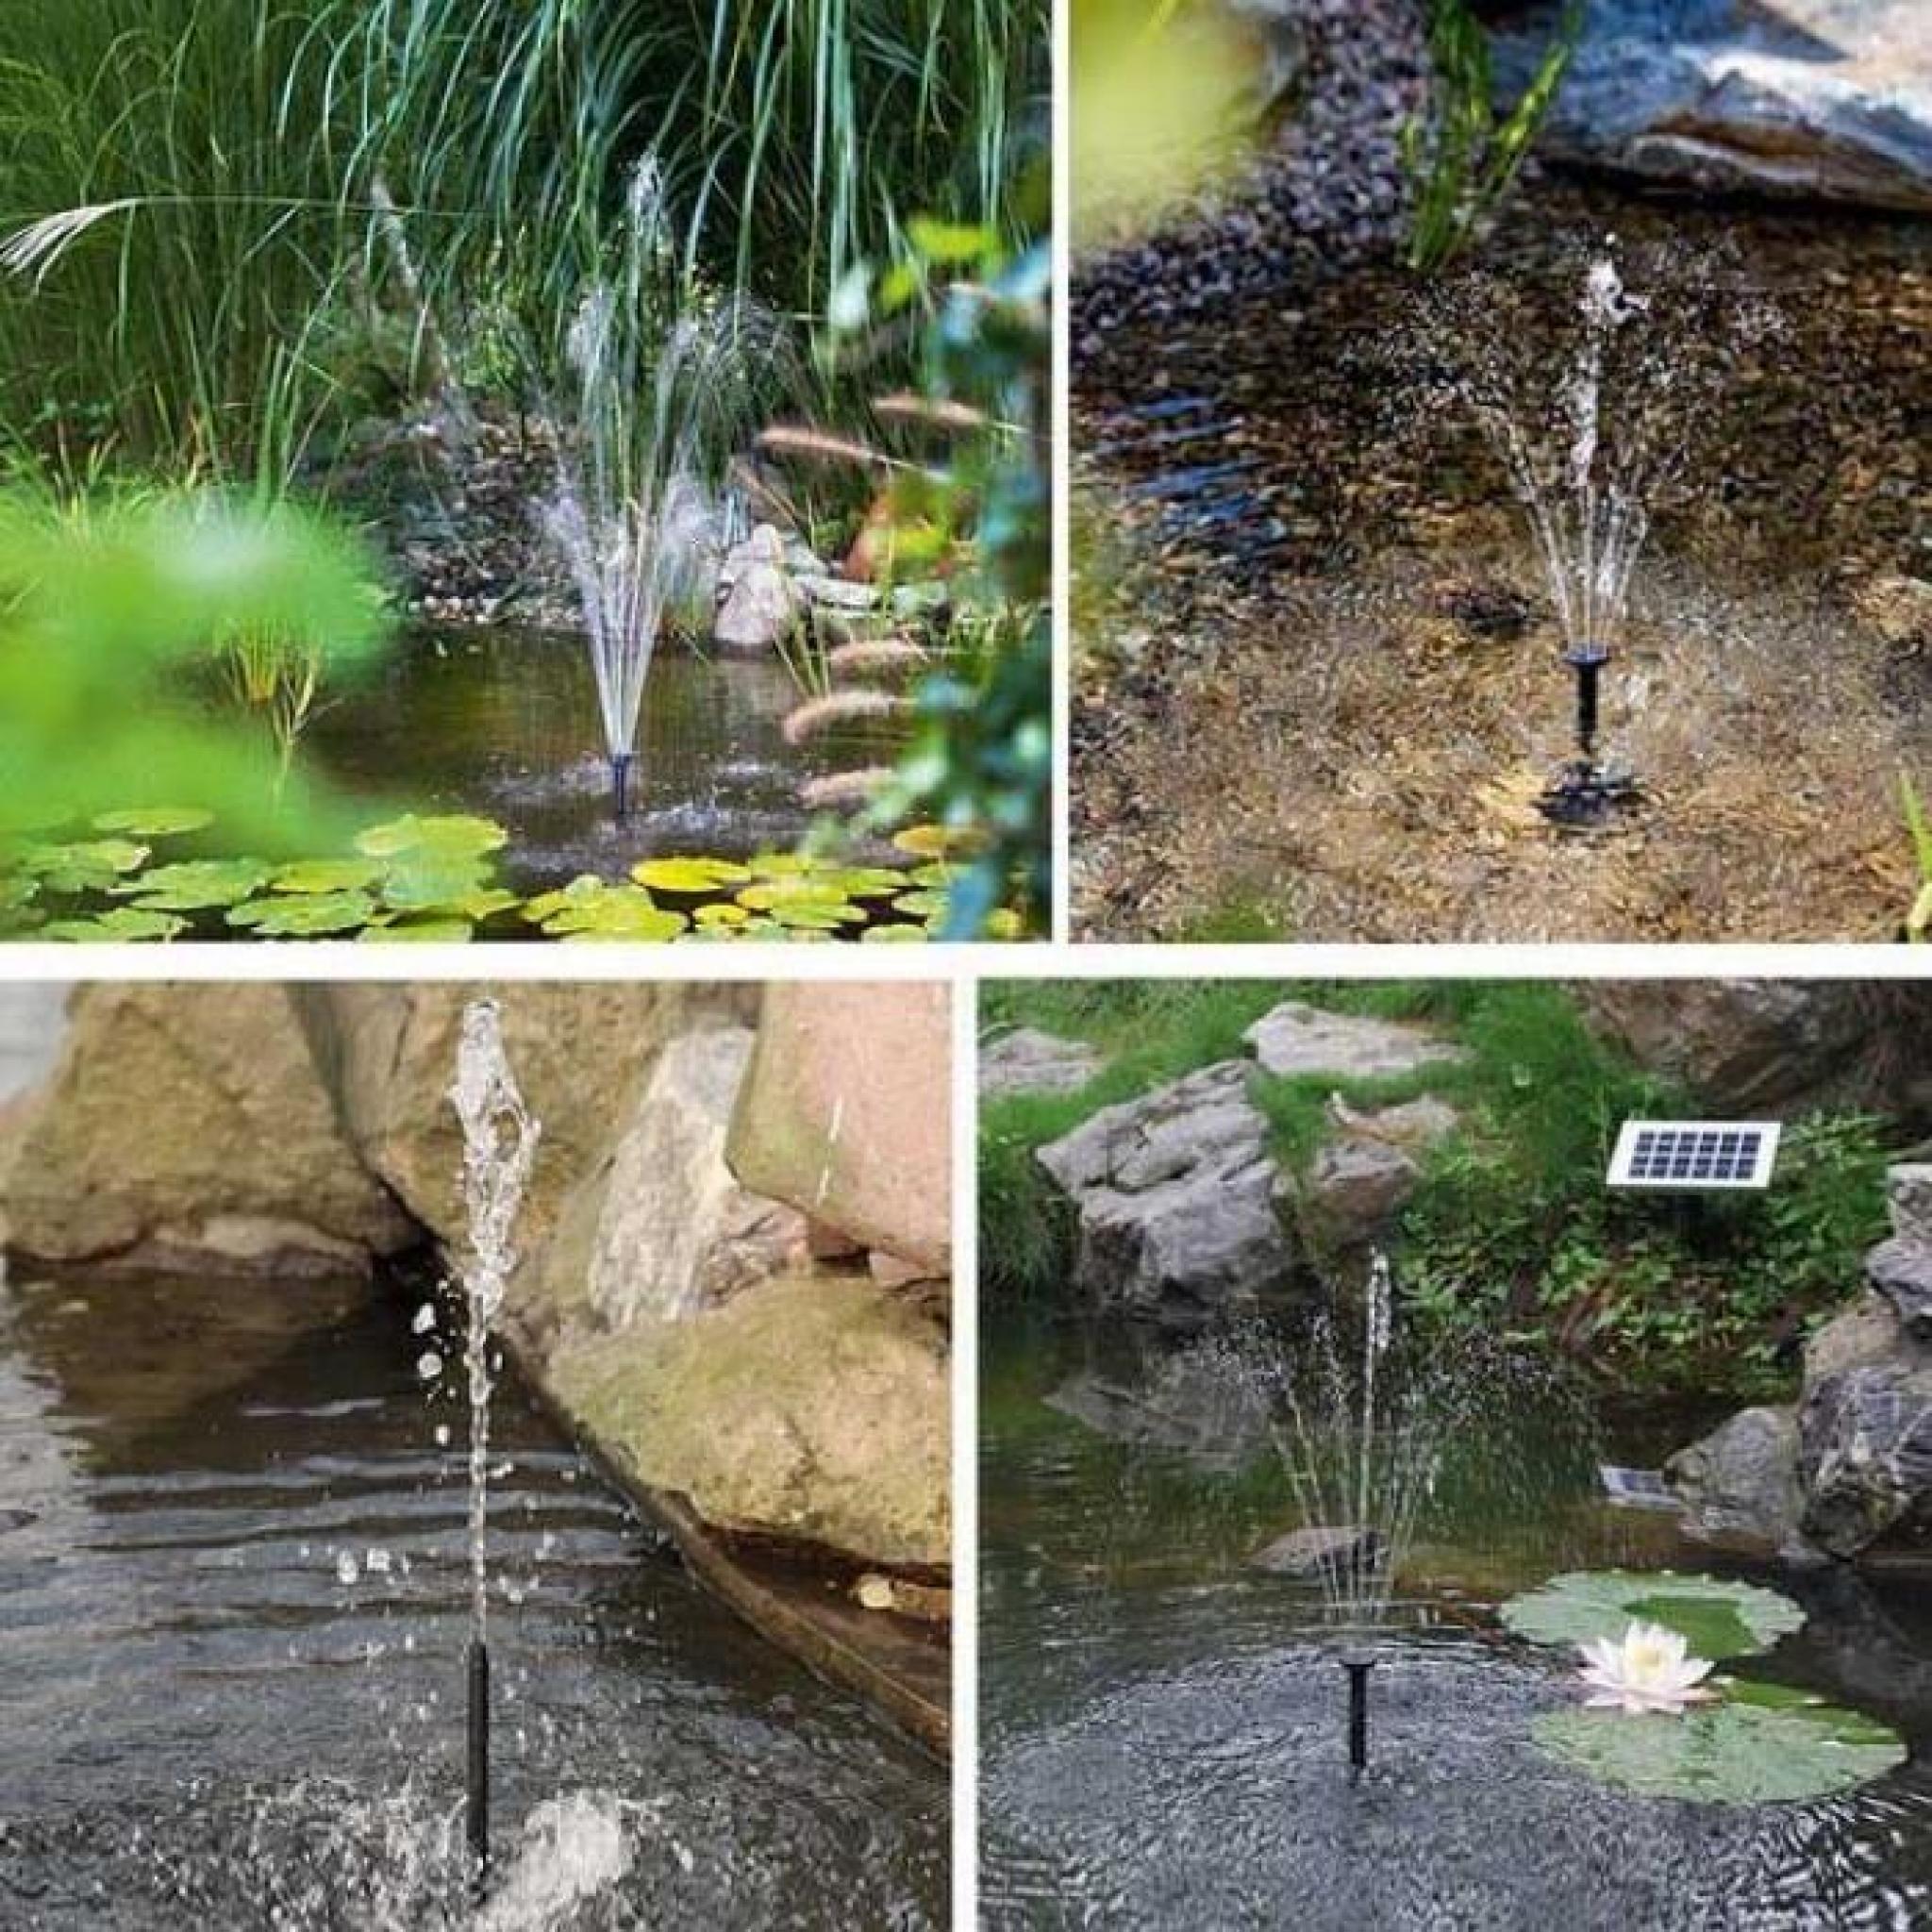 HOMDOX 1.5W pompe arrosage fontaine fontaine solaire pompe à eau pour étang jardin piscine pas cher